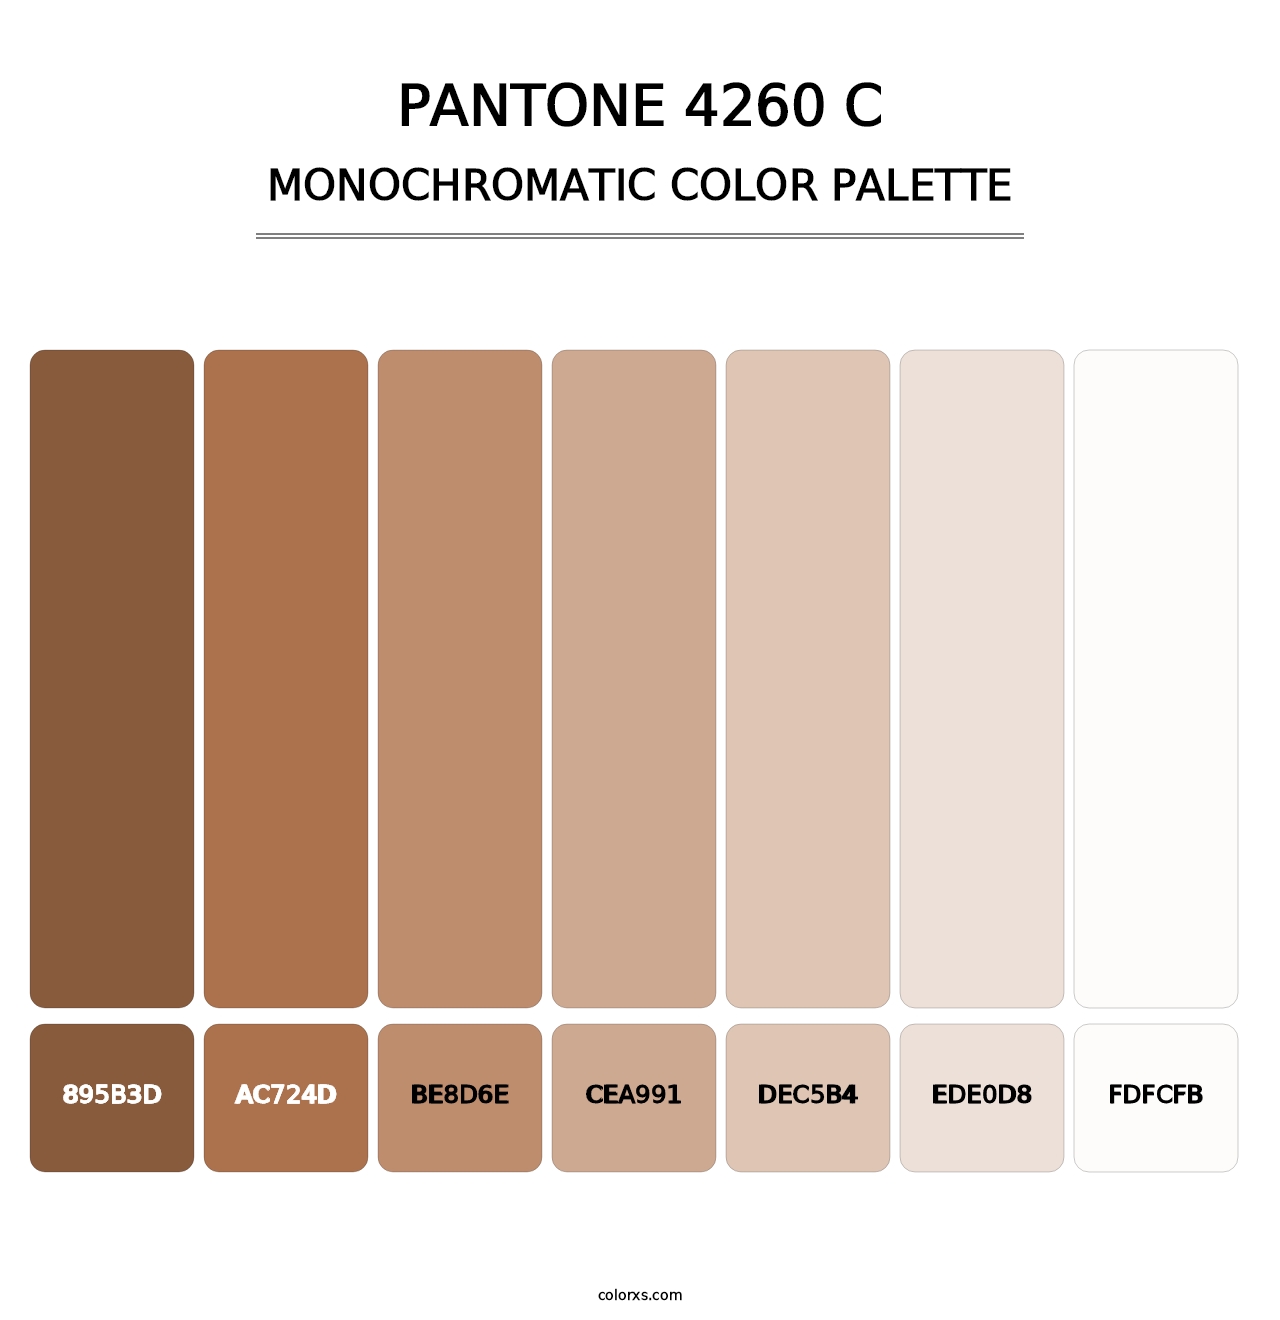 PANTONE 4260 C - Monochromatic Color Palette